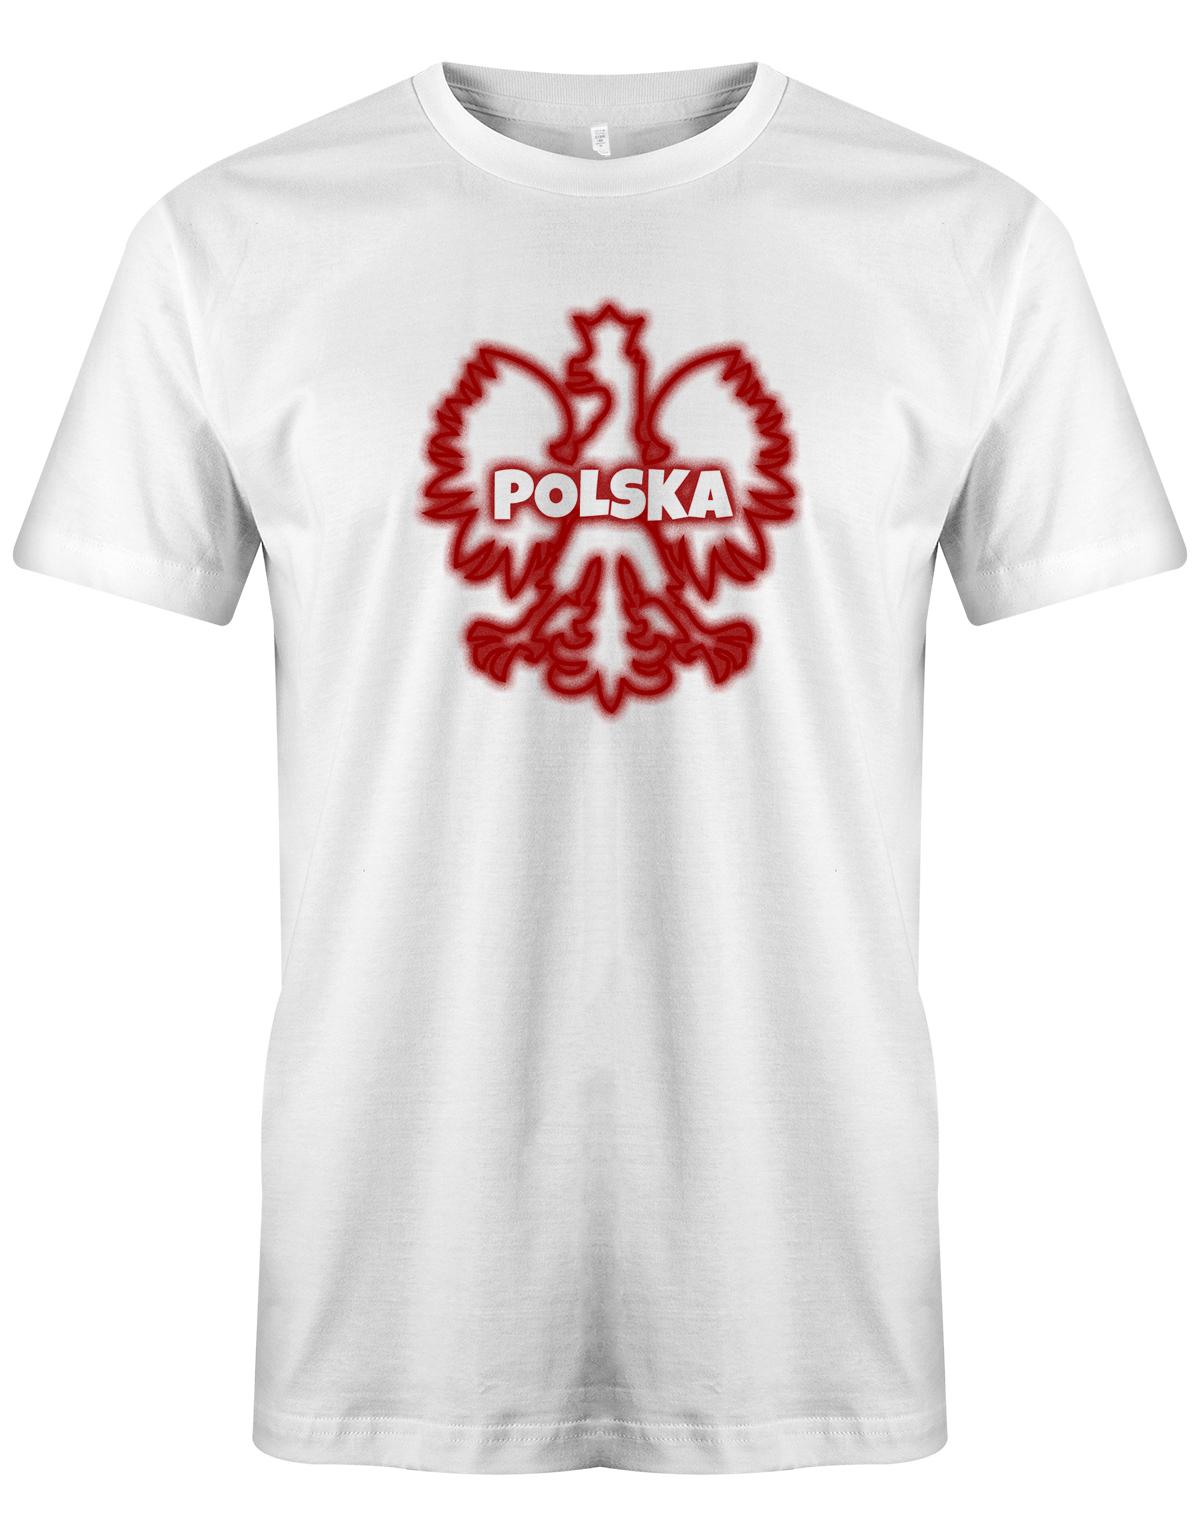 Polska Adler Outline - Polen - Fan - Herren T-Shirt